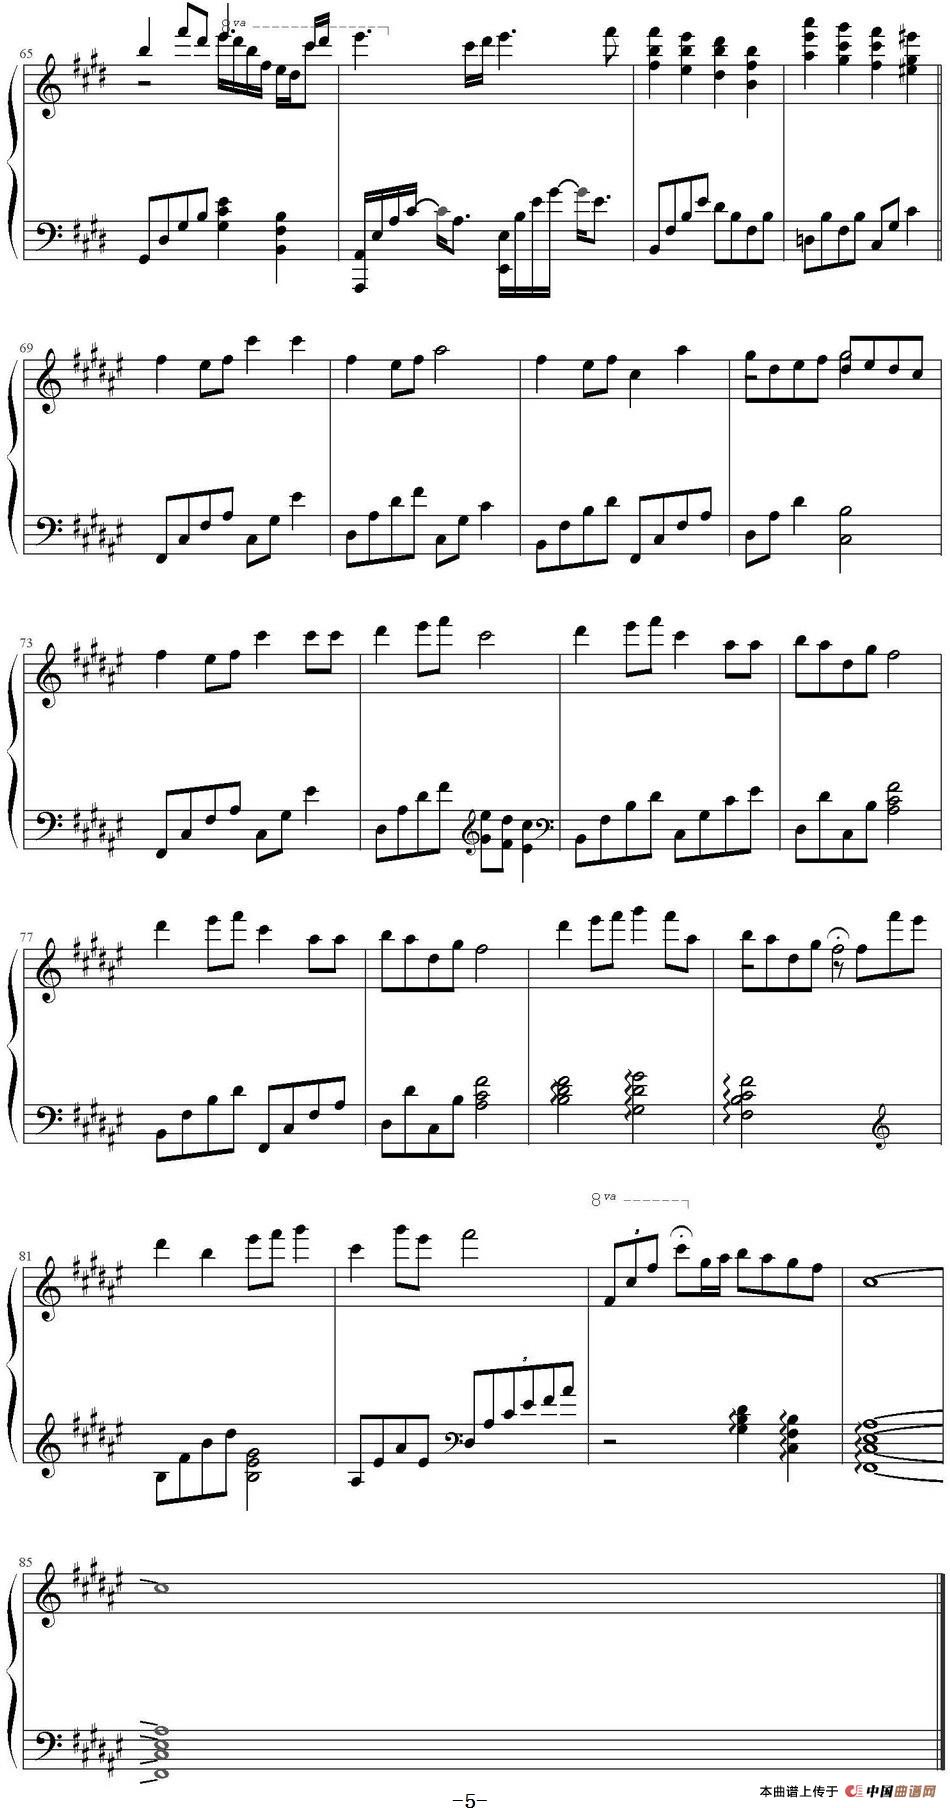 《知足》钢琴曲谱图分享